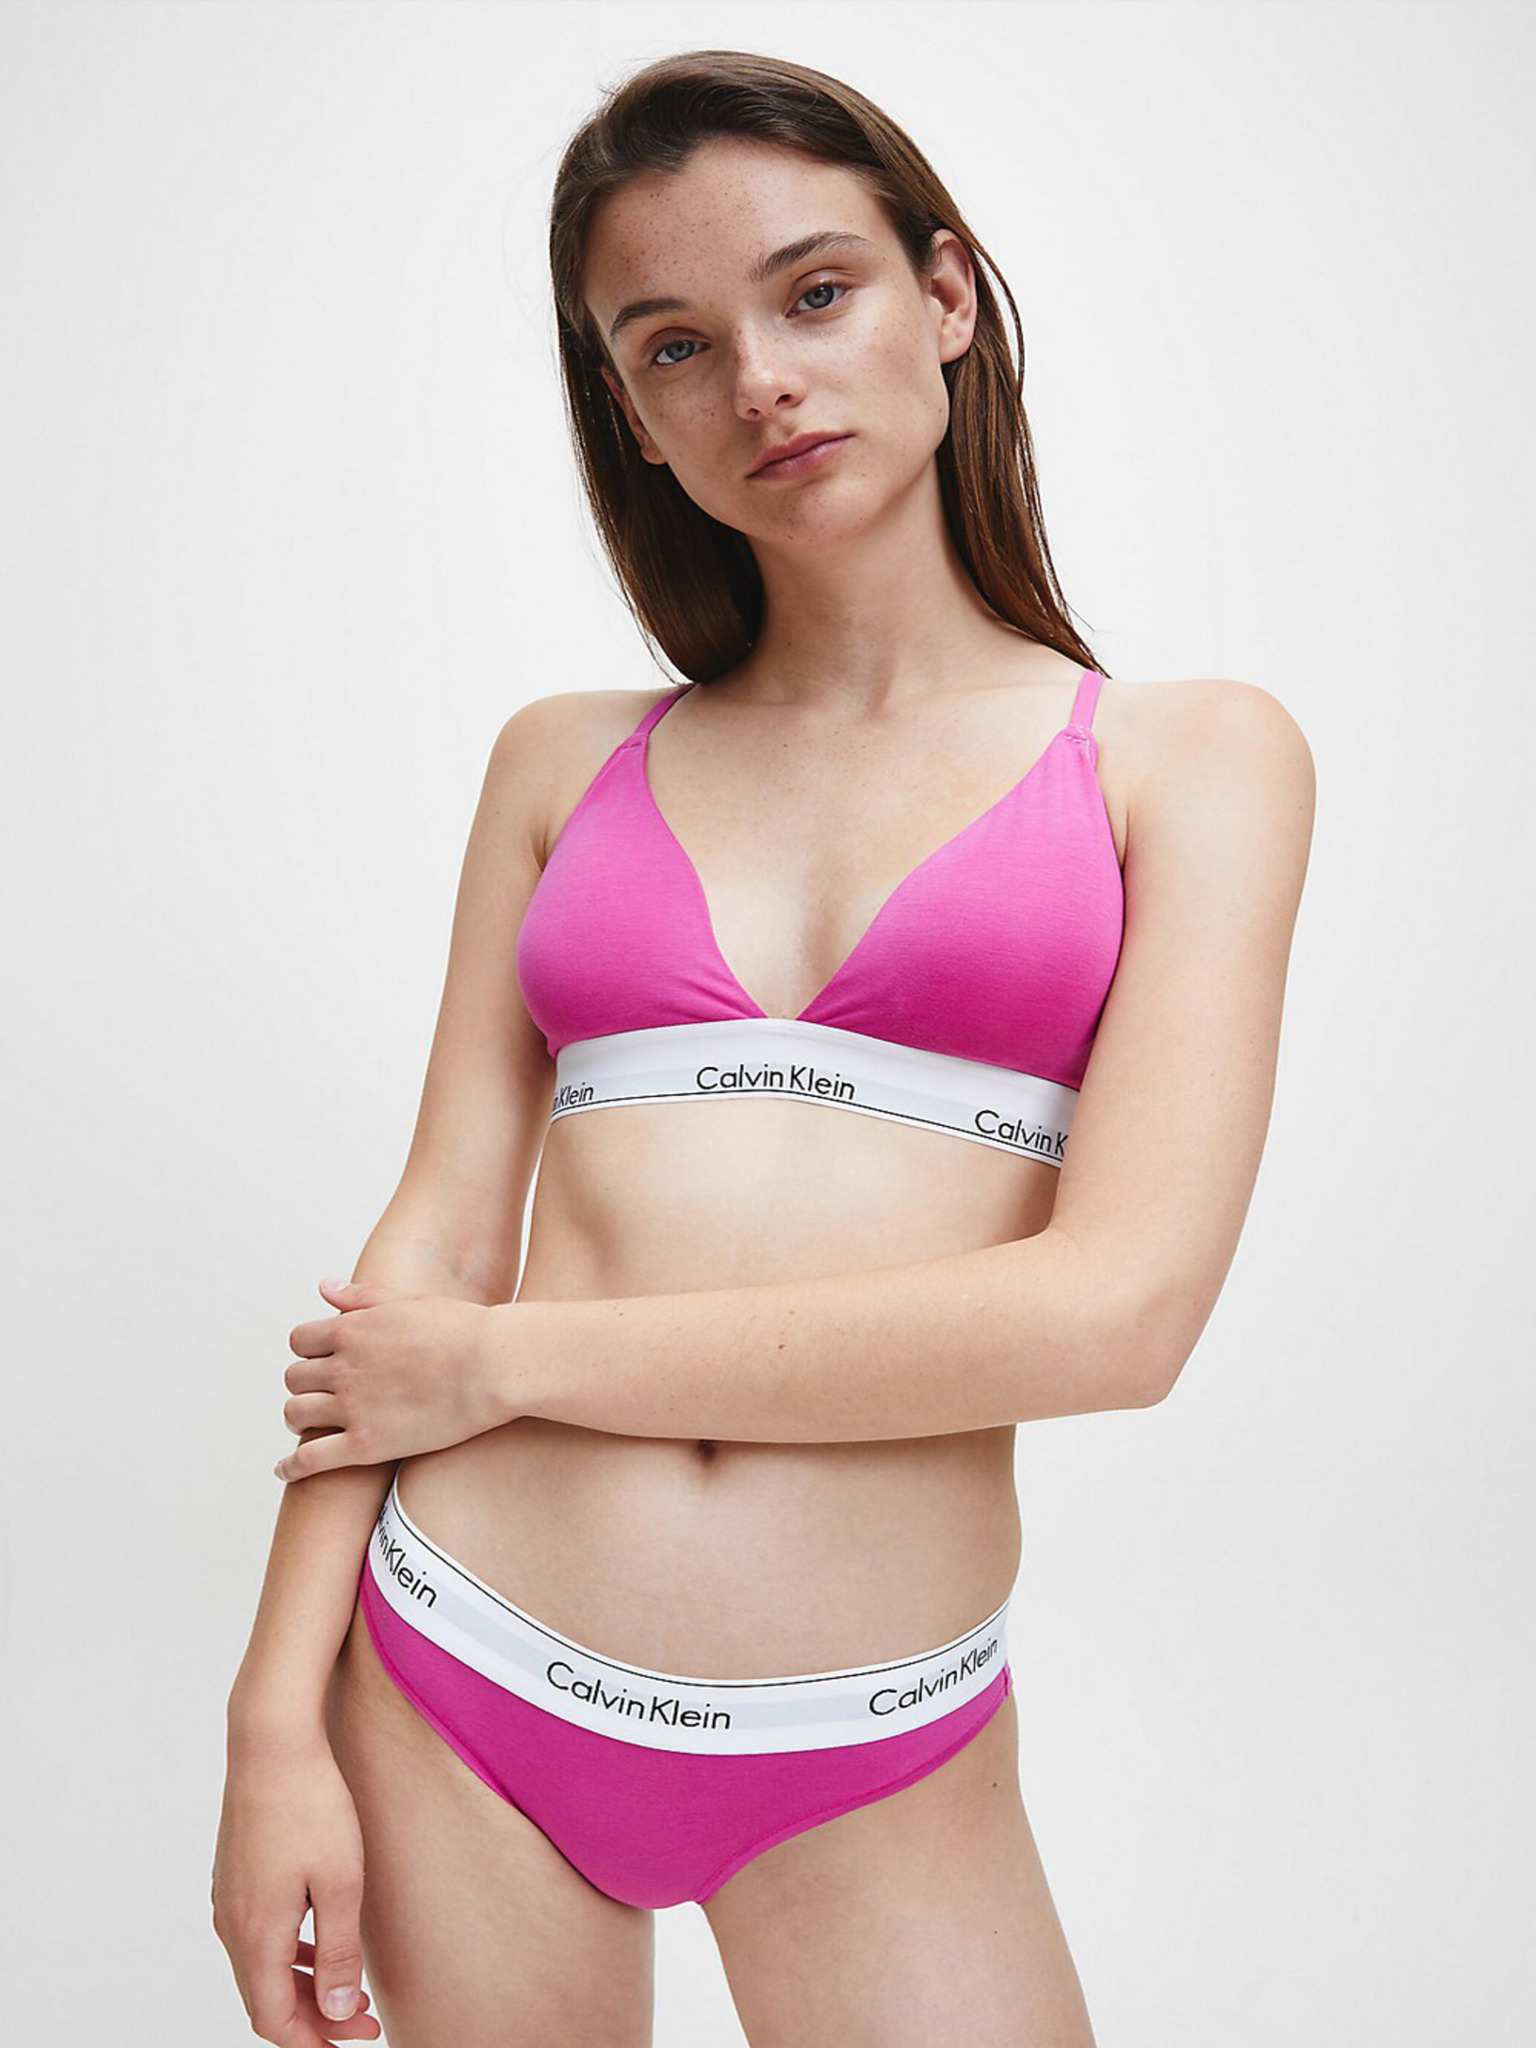 Calvin Klein Womens Hollywood Pink Cheeky Bikini Briefs